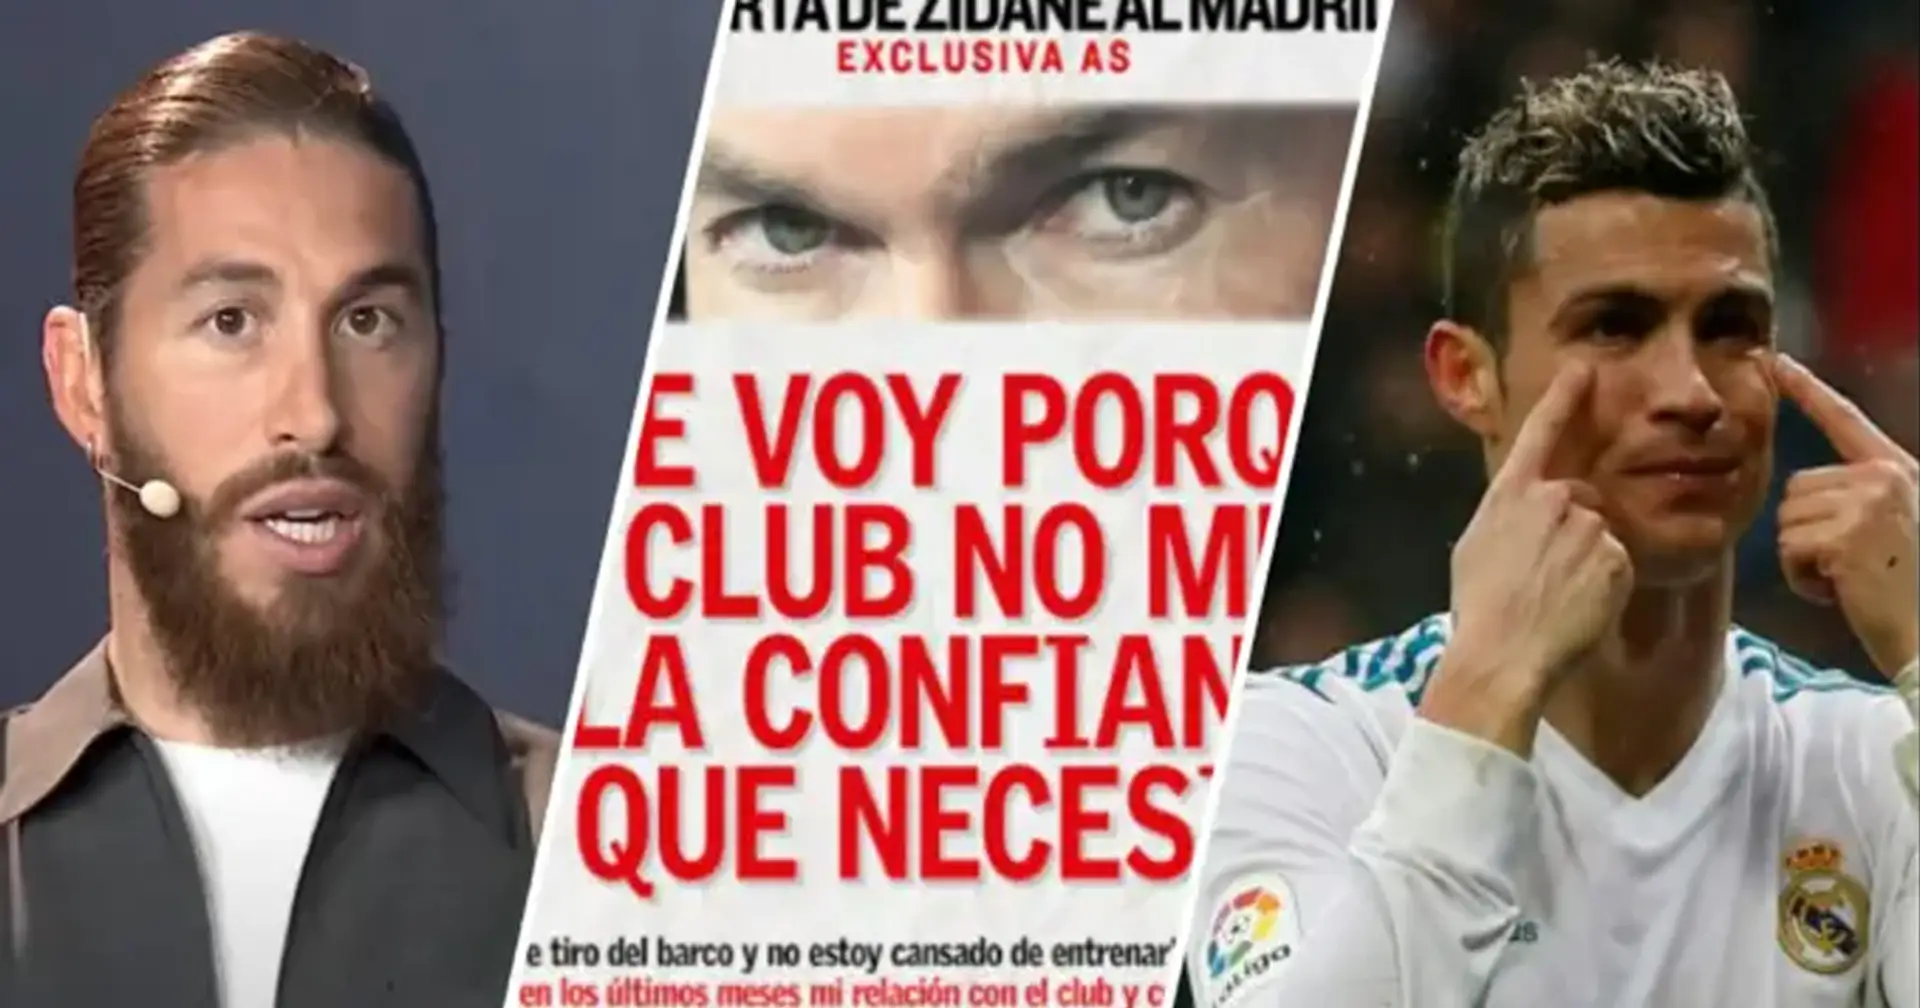 Salida de Zidane, malos fichajes y más: 5 razones por las que Florentino Pérez debería dimitir como presidente del Real Madrid